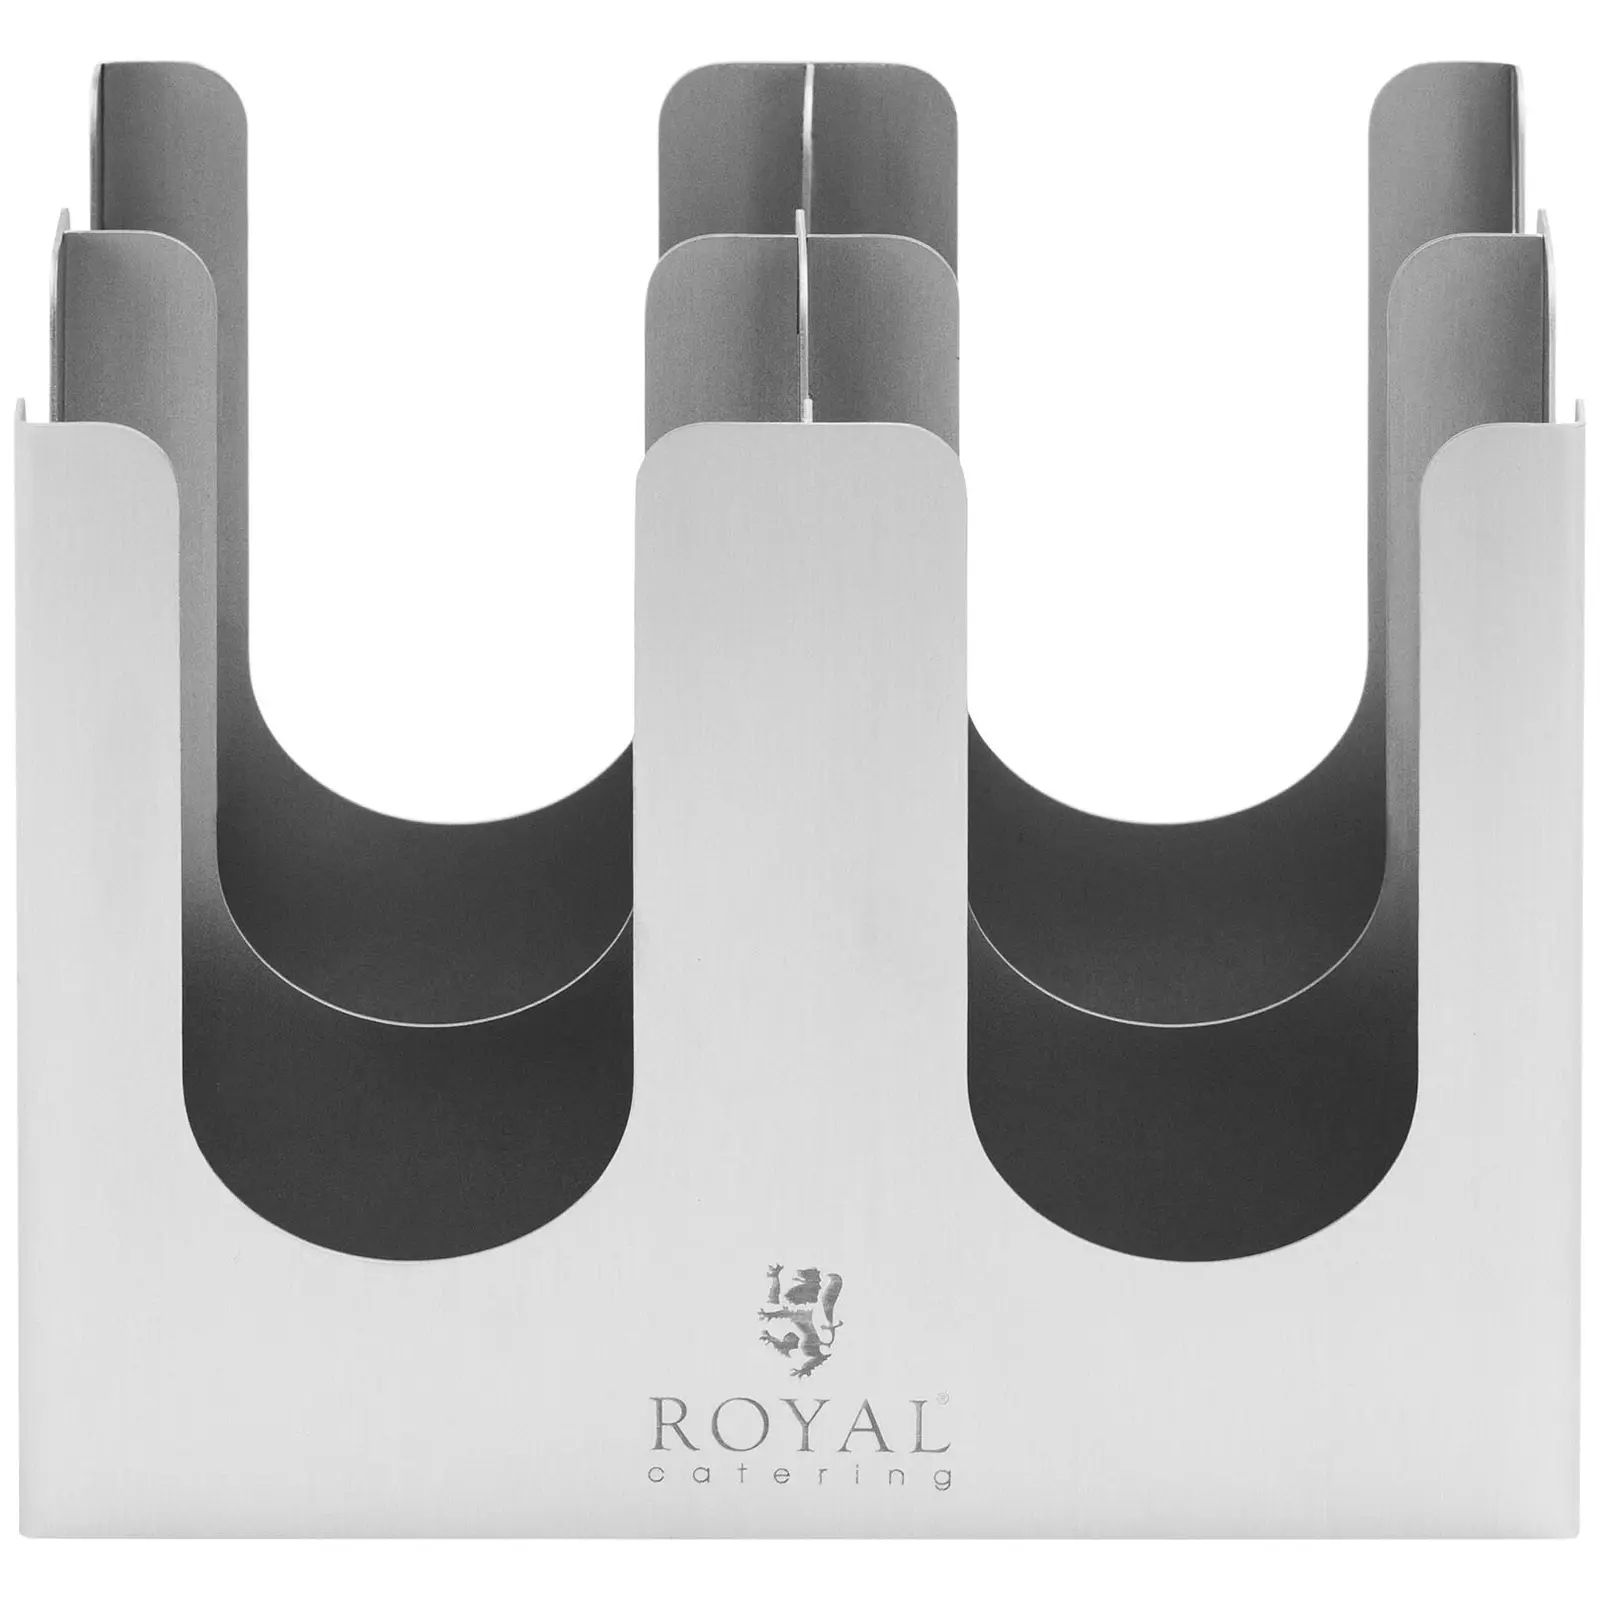 Ständer für Becher und Deckel - 4 Fächer - Edelstahl - Royal Catering